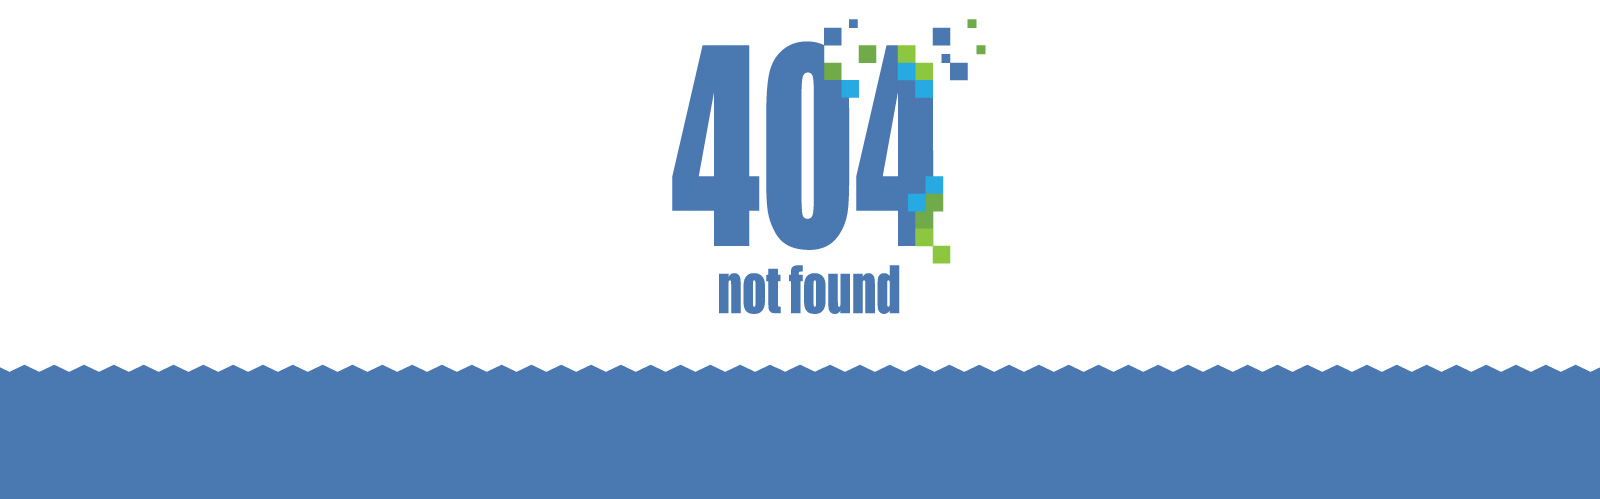 404-error-Graphic